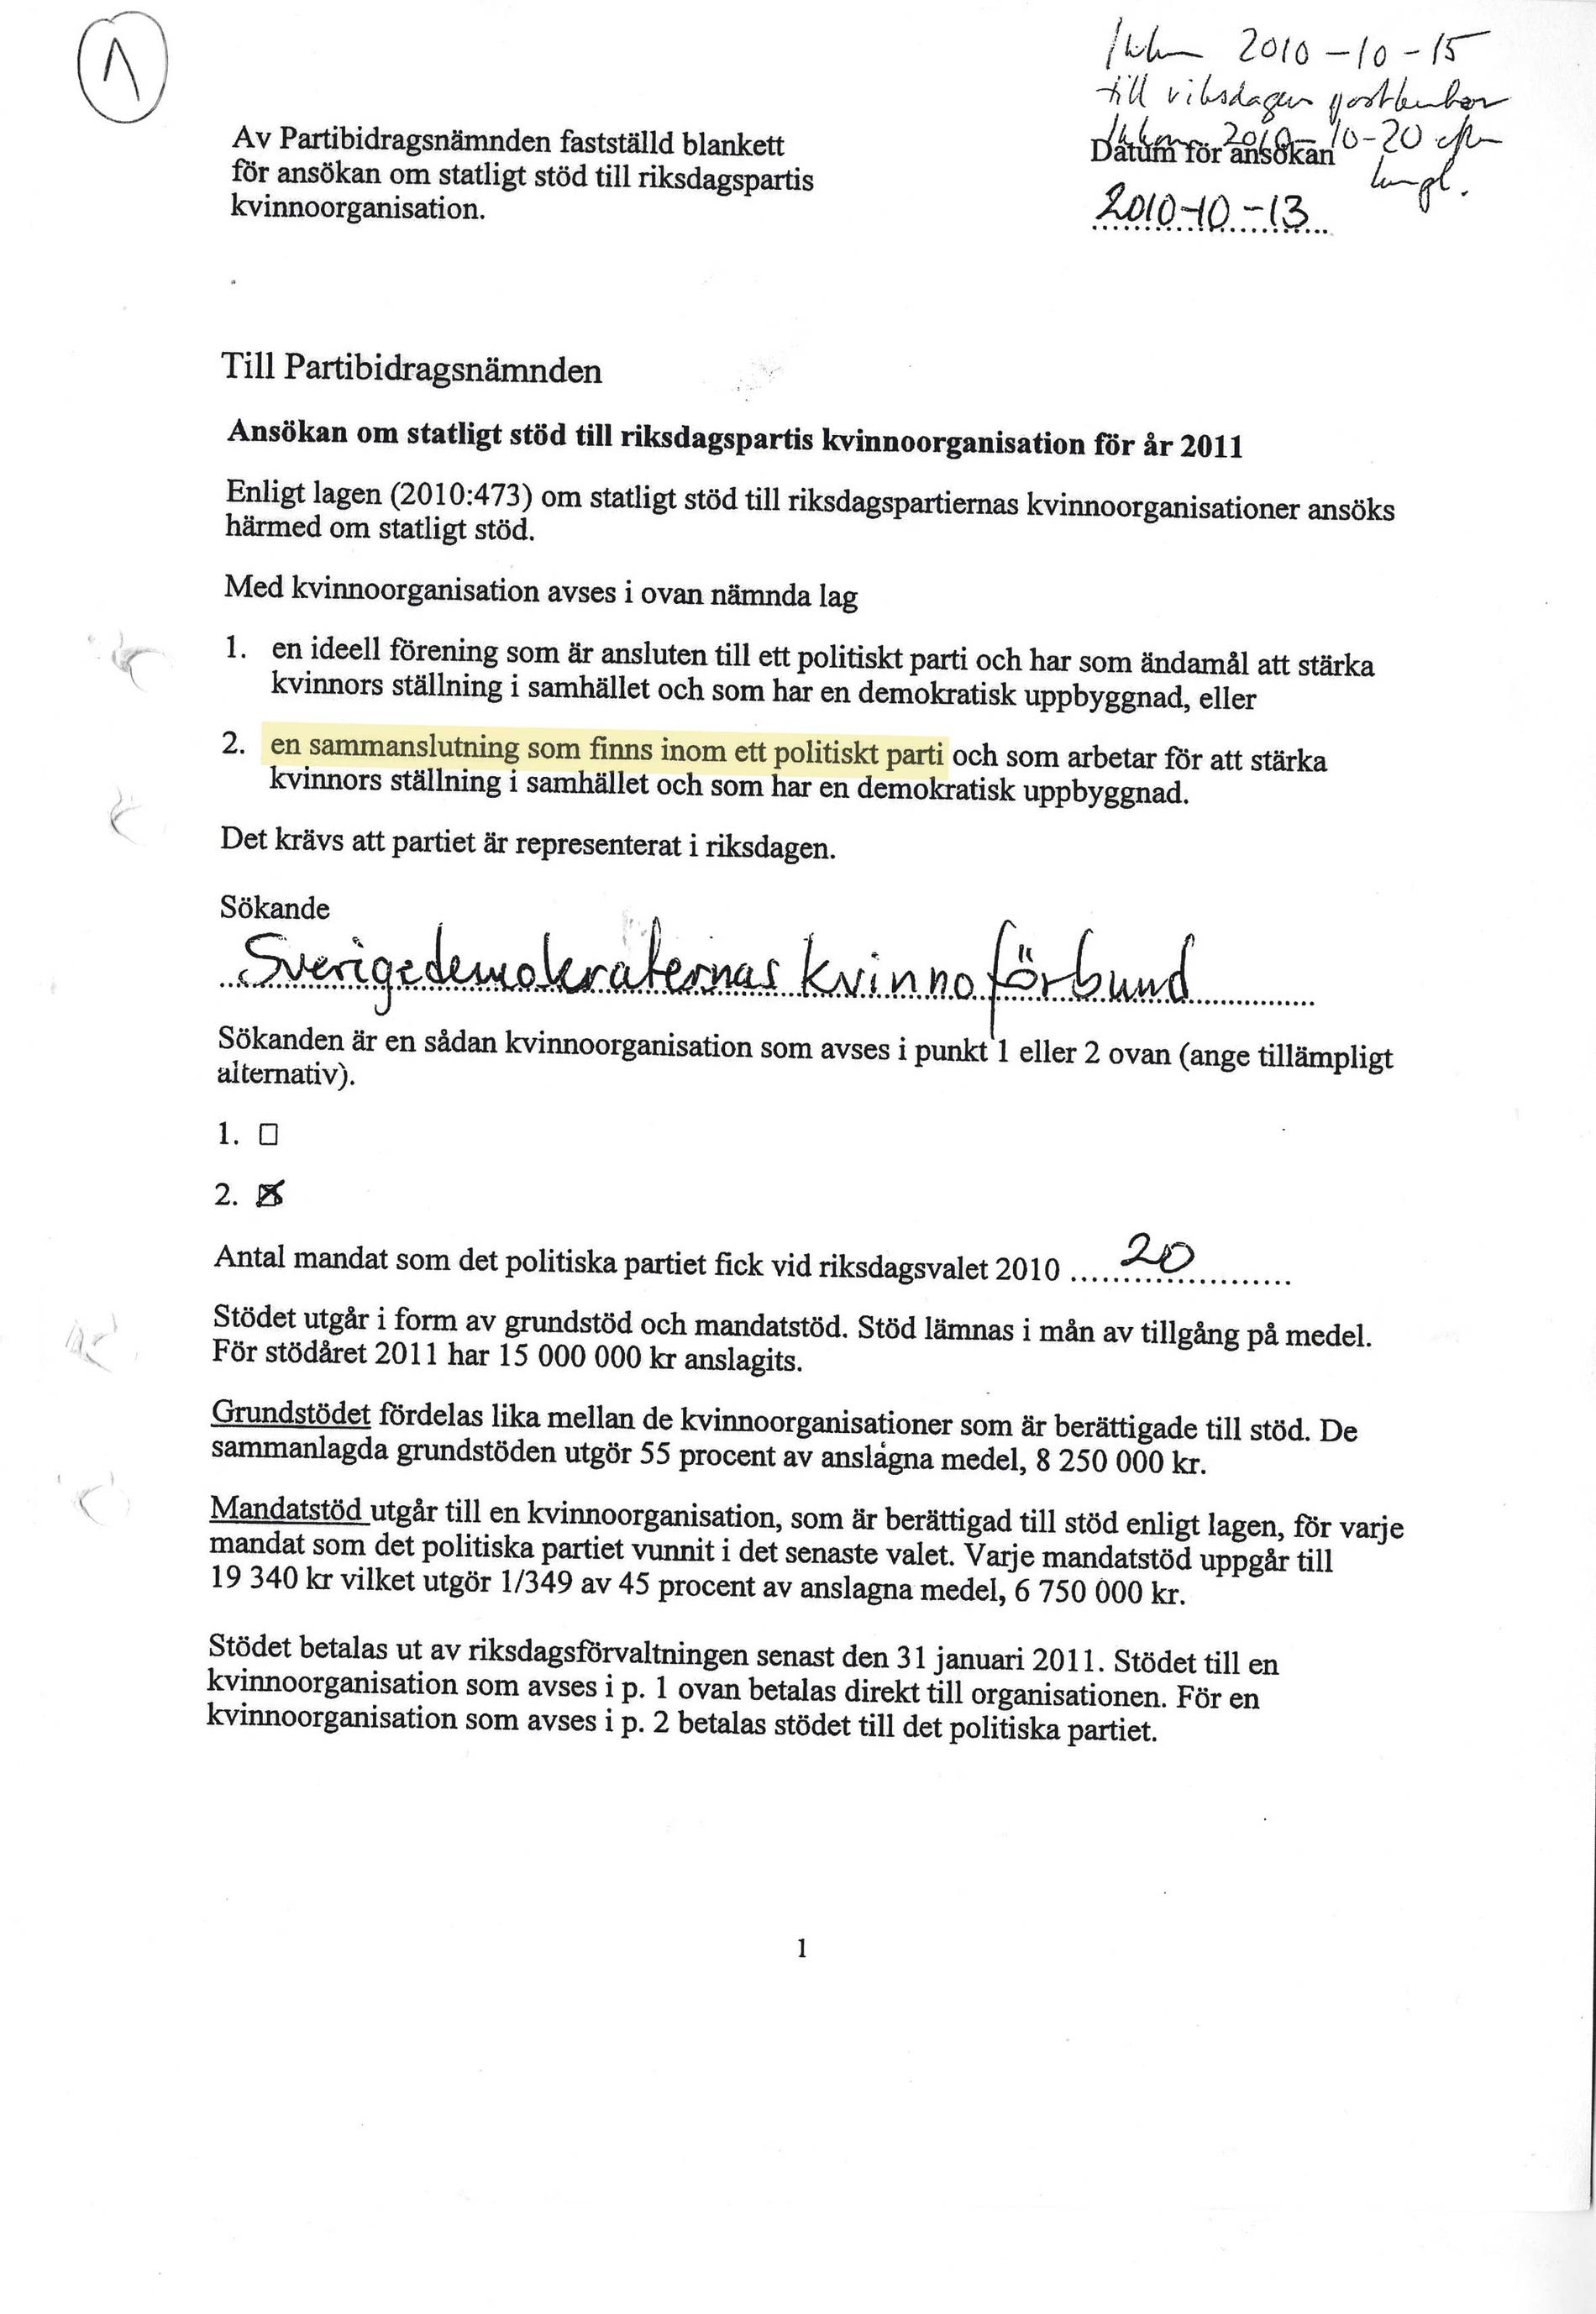 1. Ansökan Den 13 oktober 2010 skickade Sverigedemokraterna in en ansökan om bidrag för ett fiktivt kvinnoförbund till riksdagens Partibidragsnämnd. För att skattepengarna skulle gå direkt till partikassan uppgav de att kvinnoförbundet var en "sammanslutning inom partiet", på så sätt skulle pengarna gå rakt in i partikassan och inte vara öronmärkta för den kvinnofrämjande verksamheten. Handlingarna undertecknades av partiledare Jimmie Åkesson och ekonomichefen Per Björklund. I själva verket fanns inget kvinnoförbund inom Sverigedemokraterna vid den här tidpunkten.